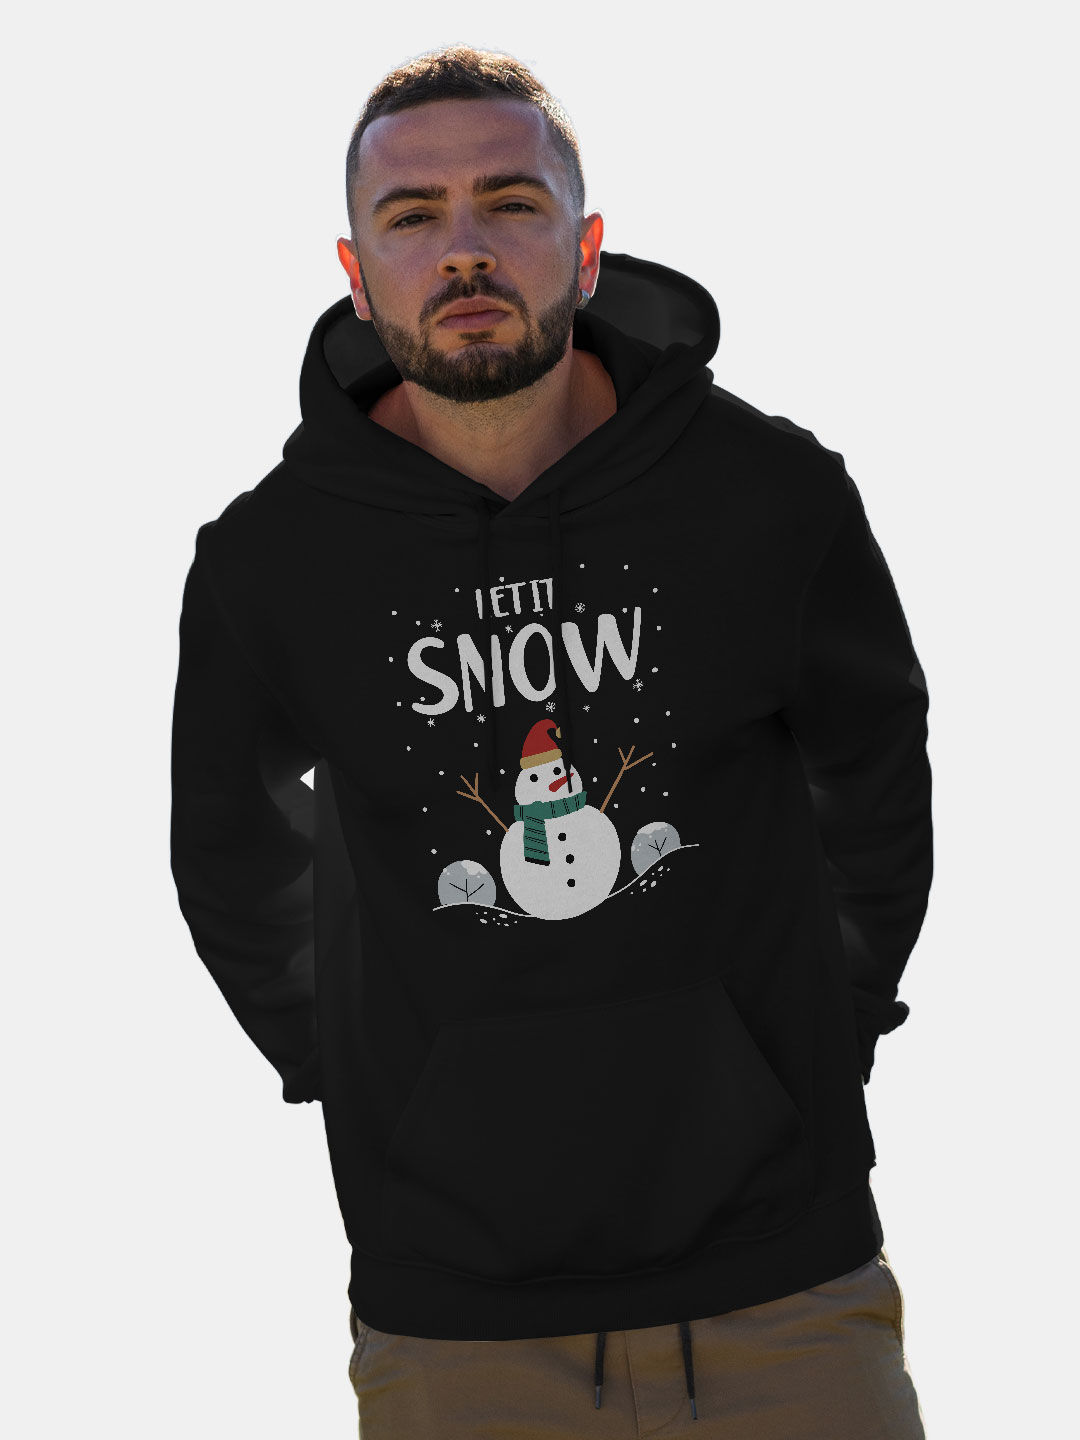 Buy Let It Snow - Hoodie Hoodies Online